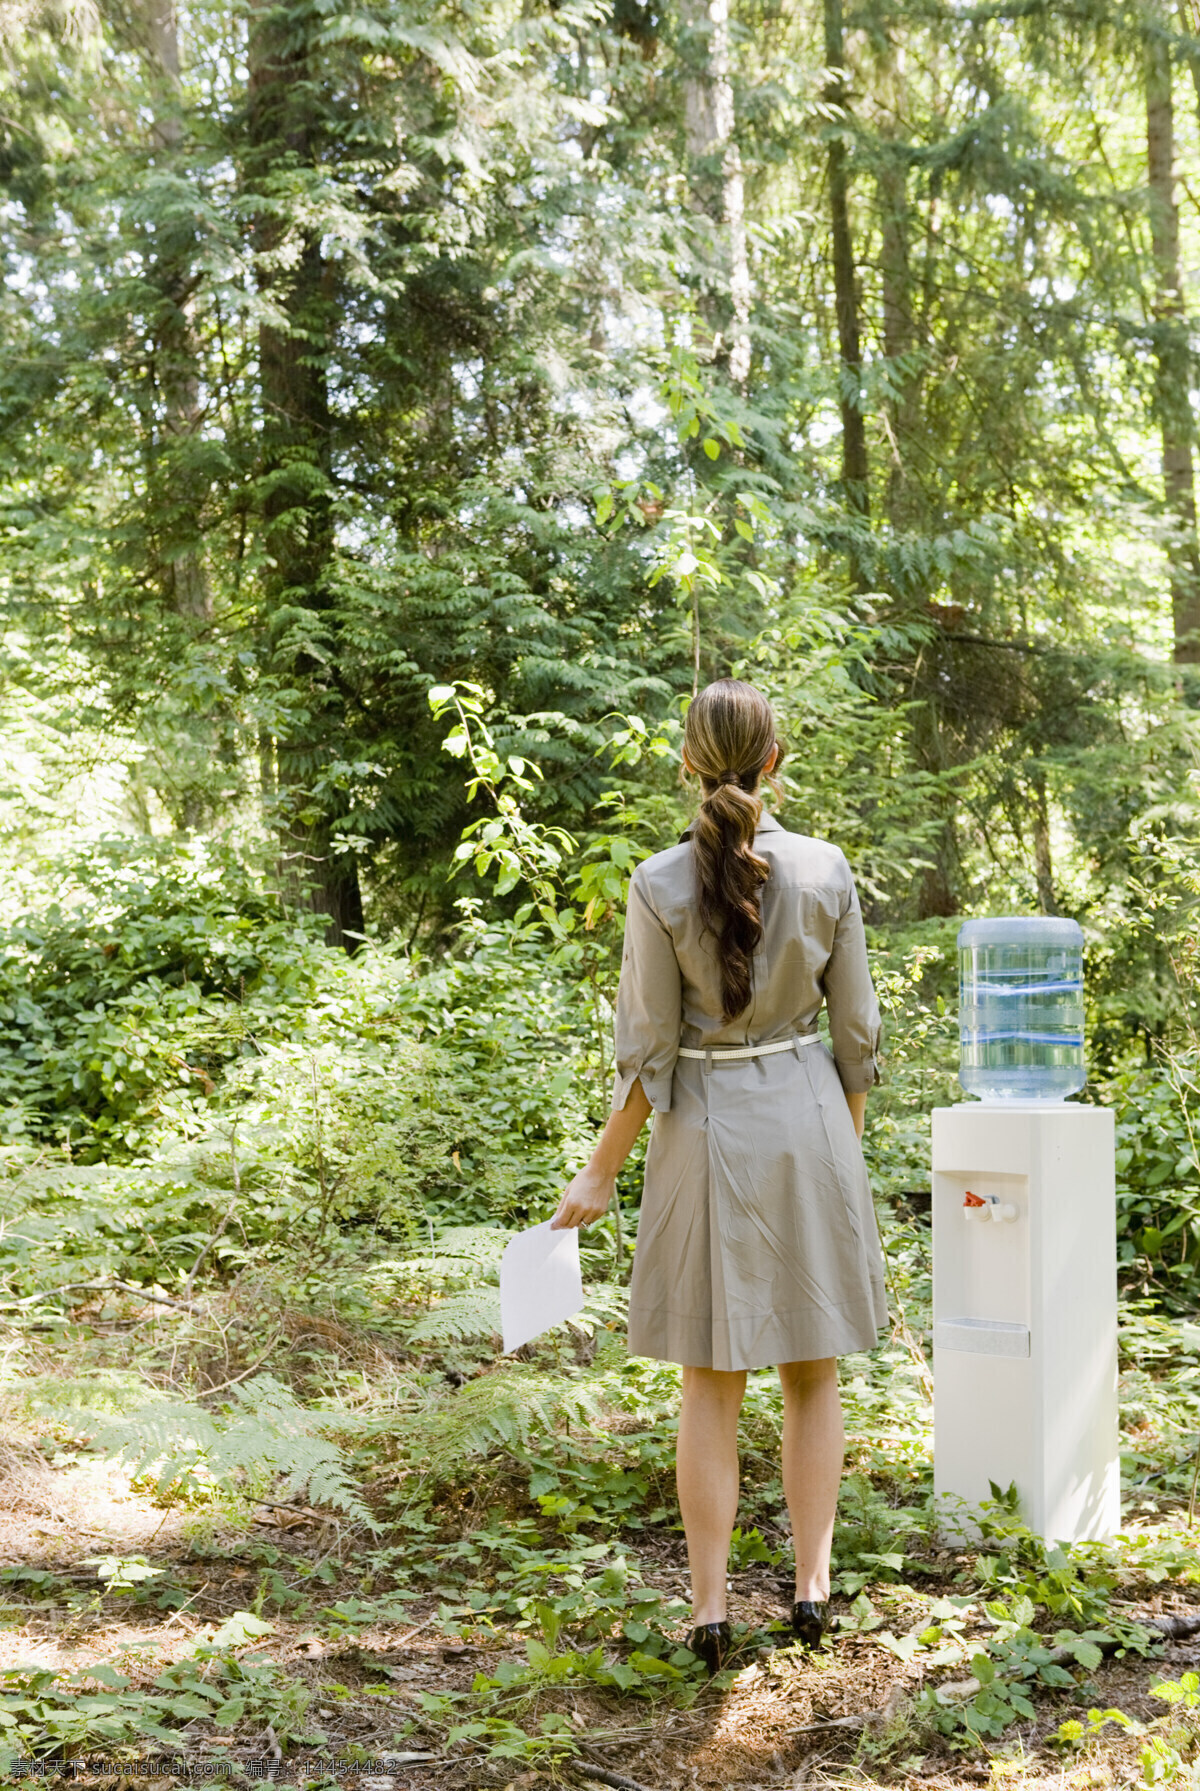 站立 饮水机 旁边 女人 户外 户外生活 人物 树林 自然 好环境 背影 生活人物 人物图片